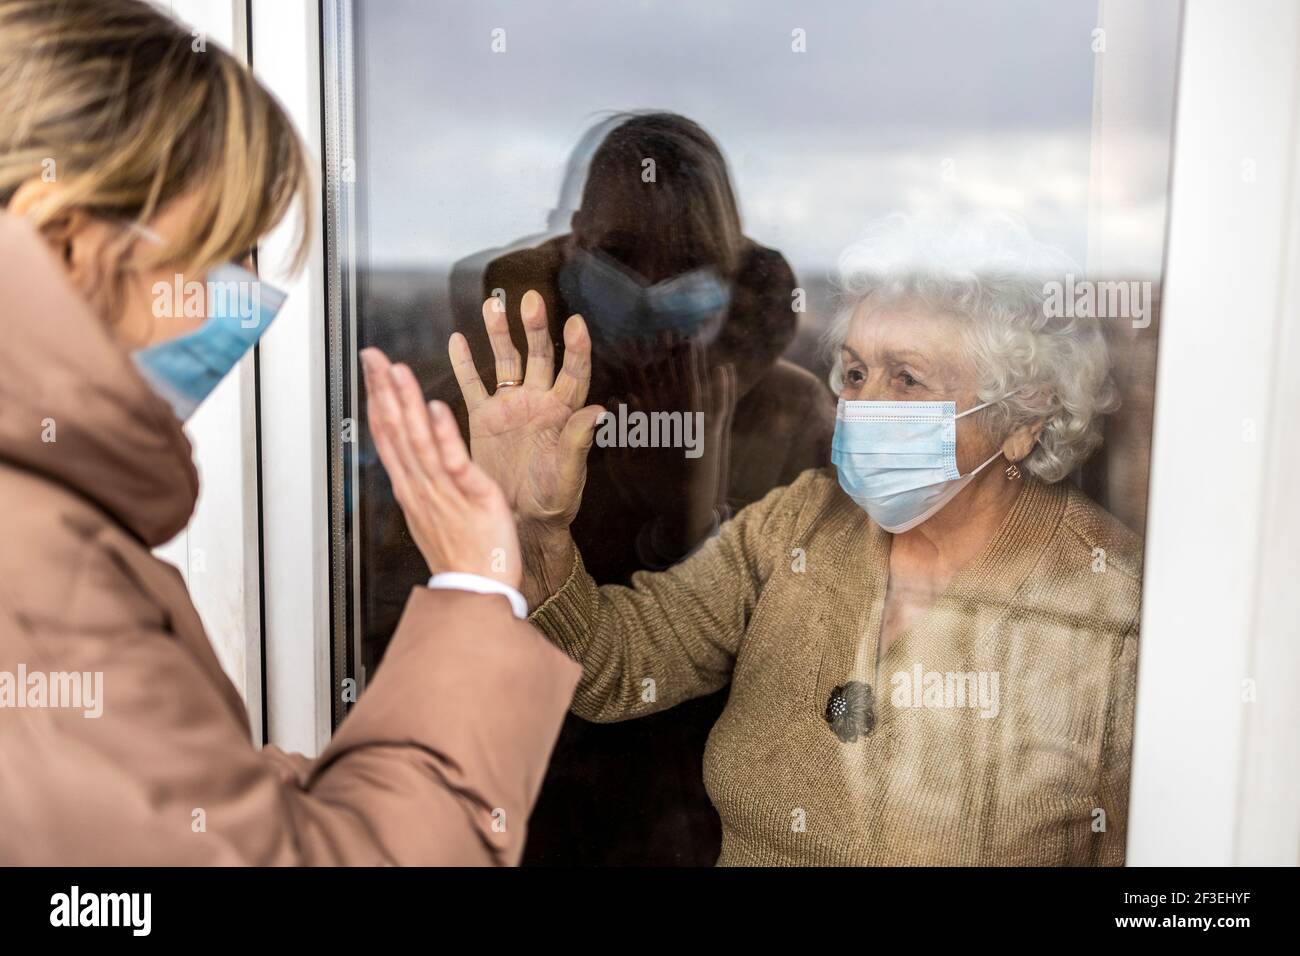 Donna che visita la nonna in isolamento durante una pandemia di coronavirus Foto Stock